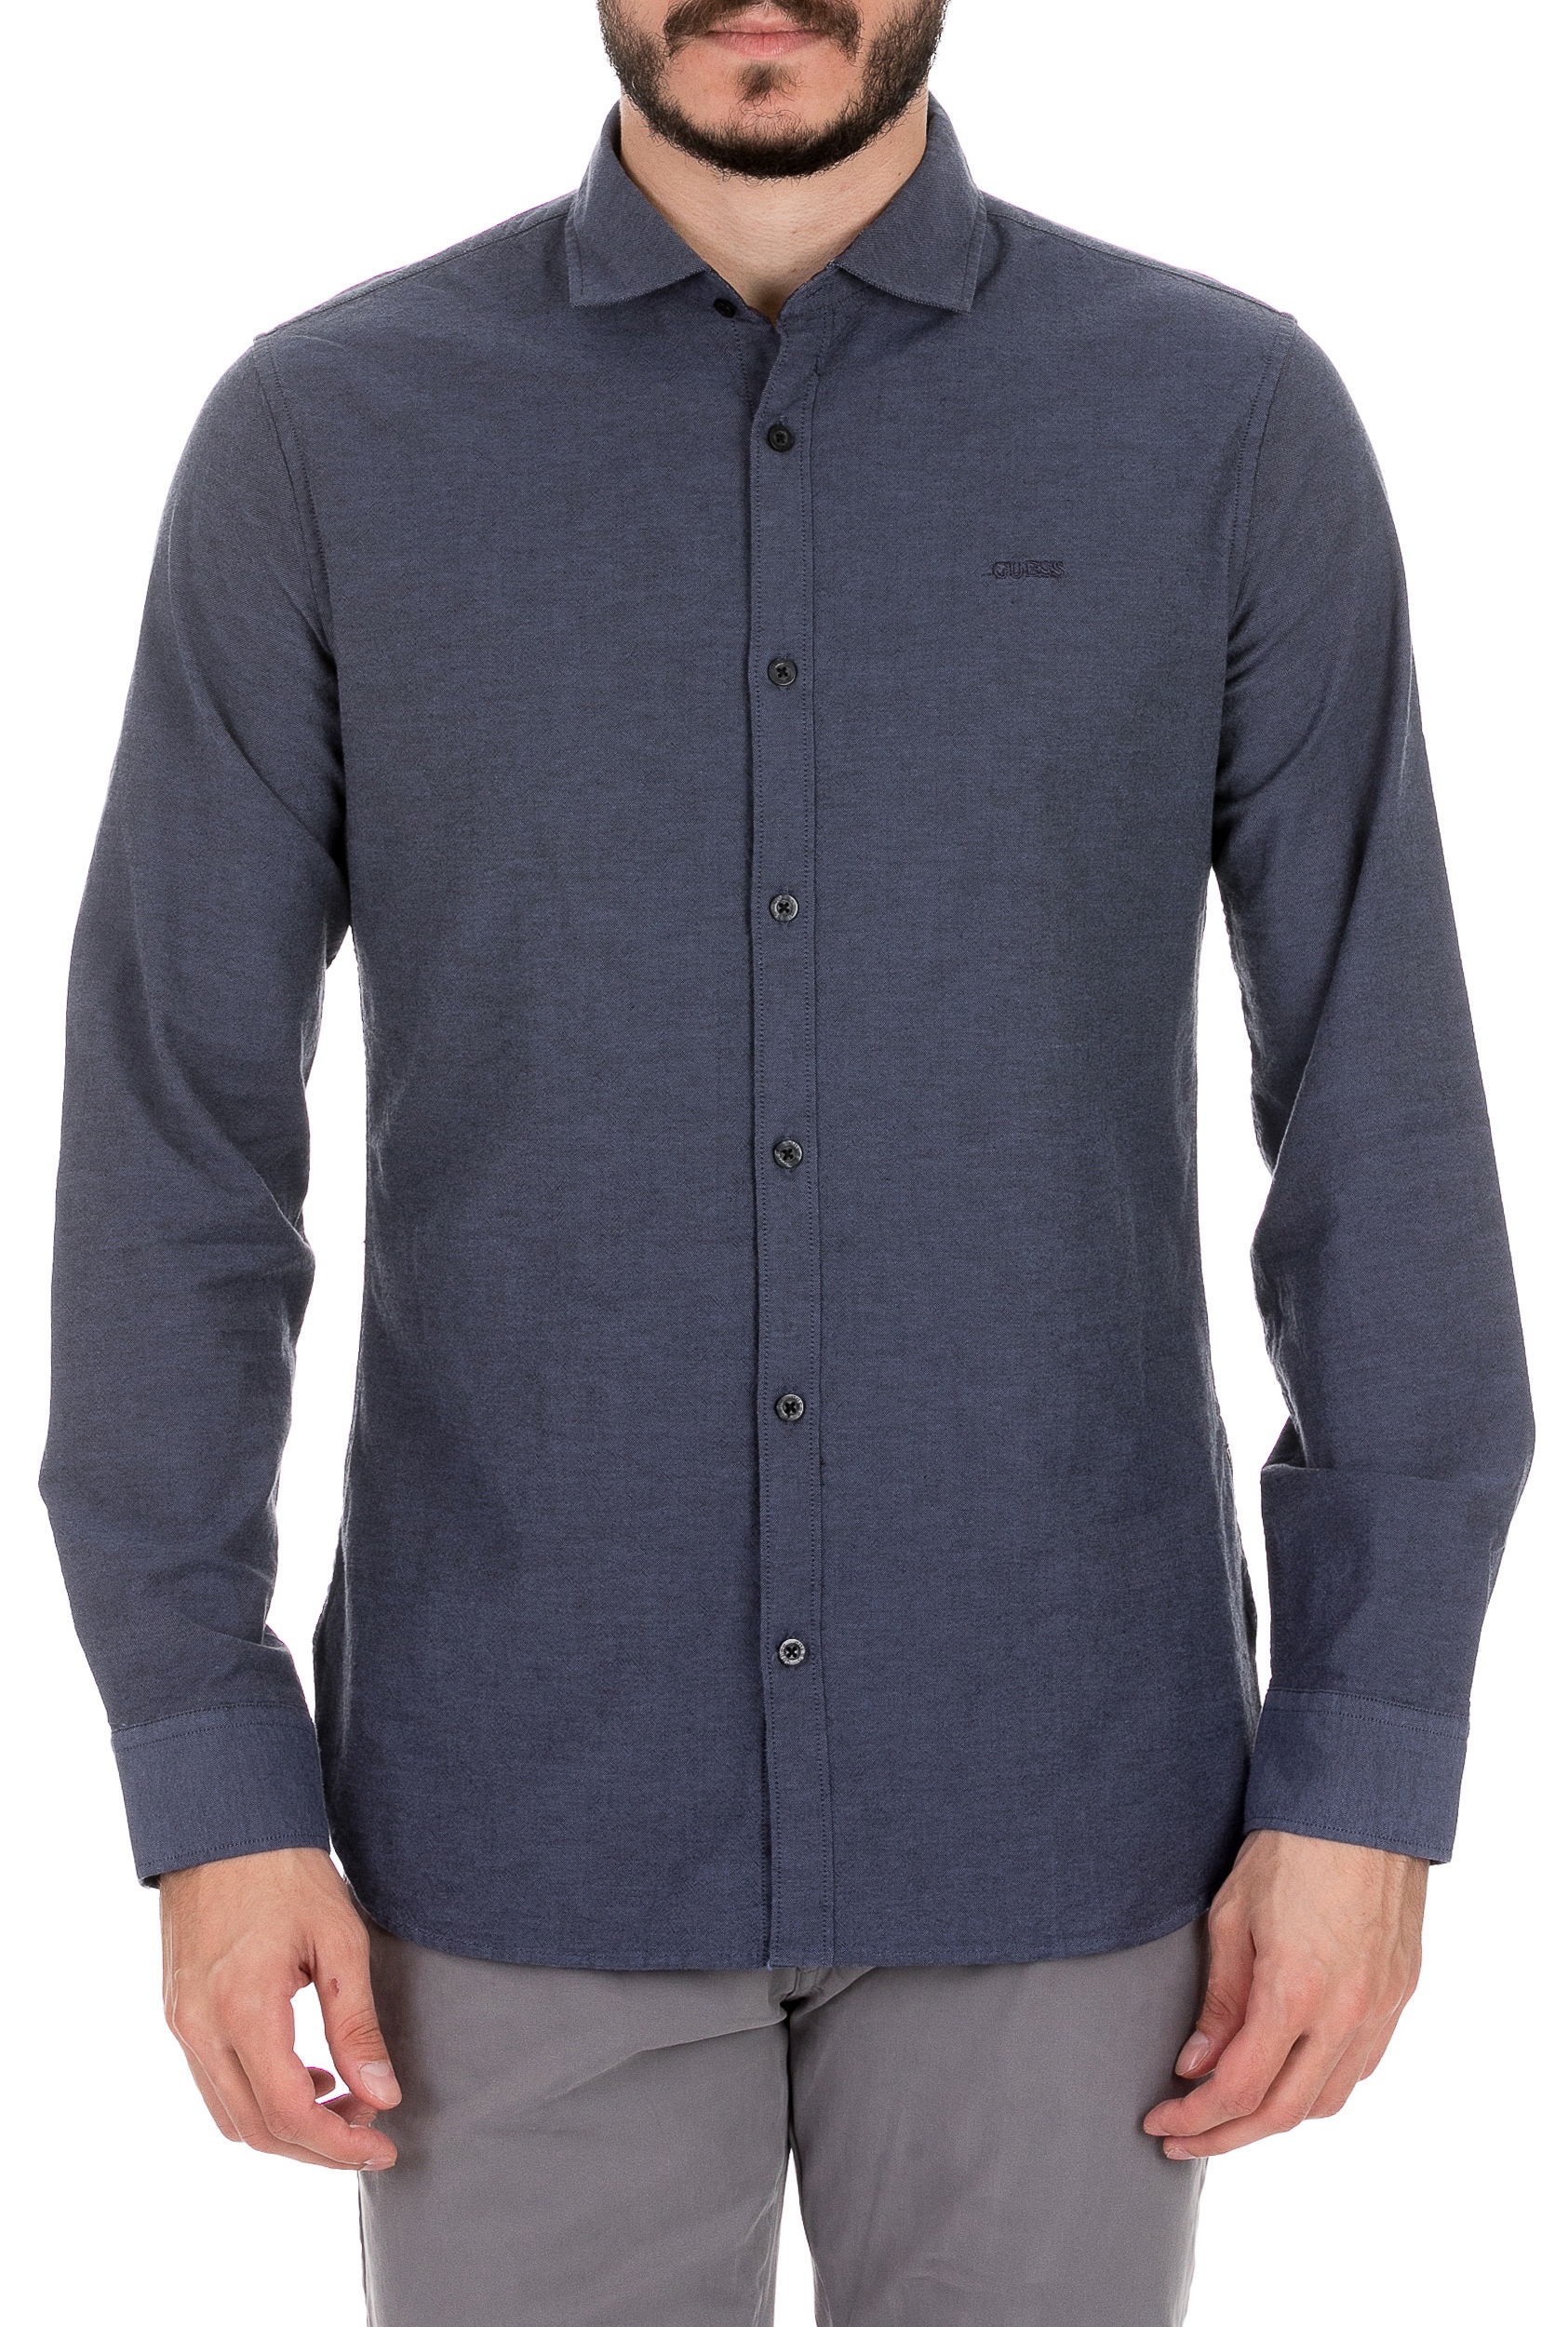 Ανδρικά/Ρούχα/Πουκάμισα/Μακρυμάνικα GUESS - Ανδρικό πουκάμισο GUESS ALAMEDA OXFORD μπλε